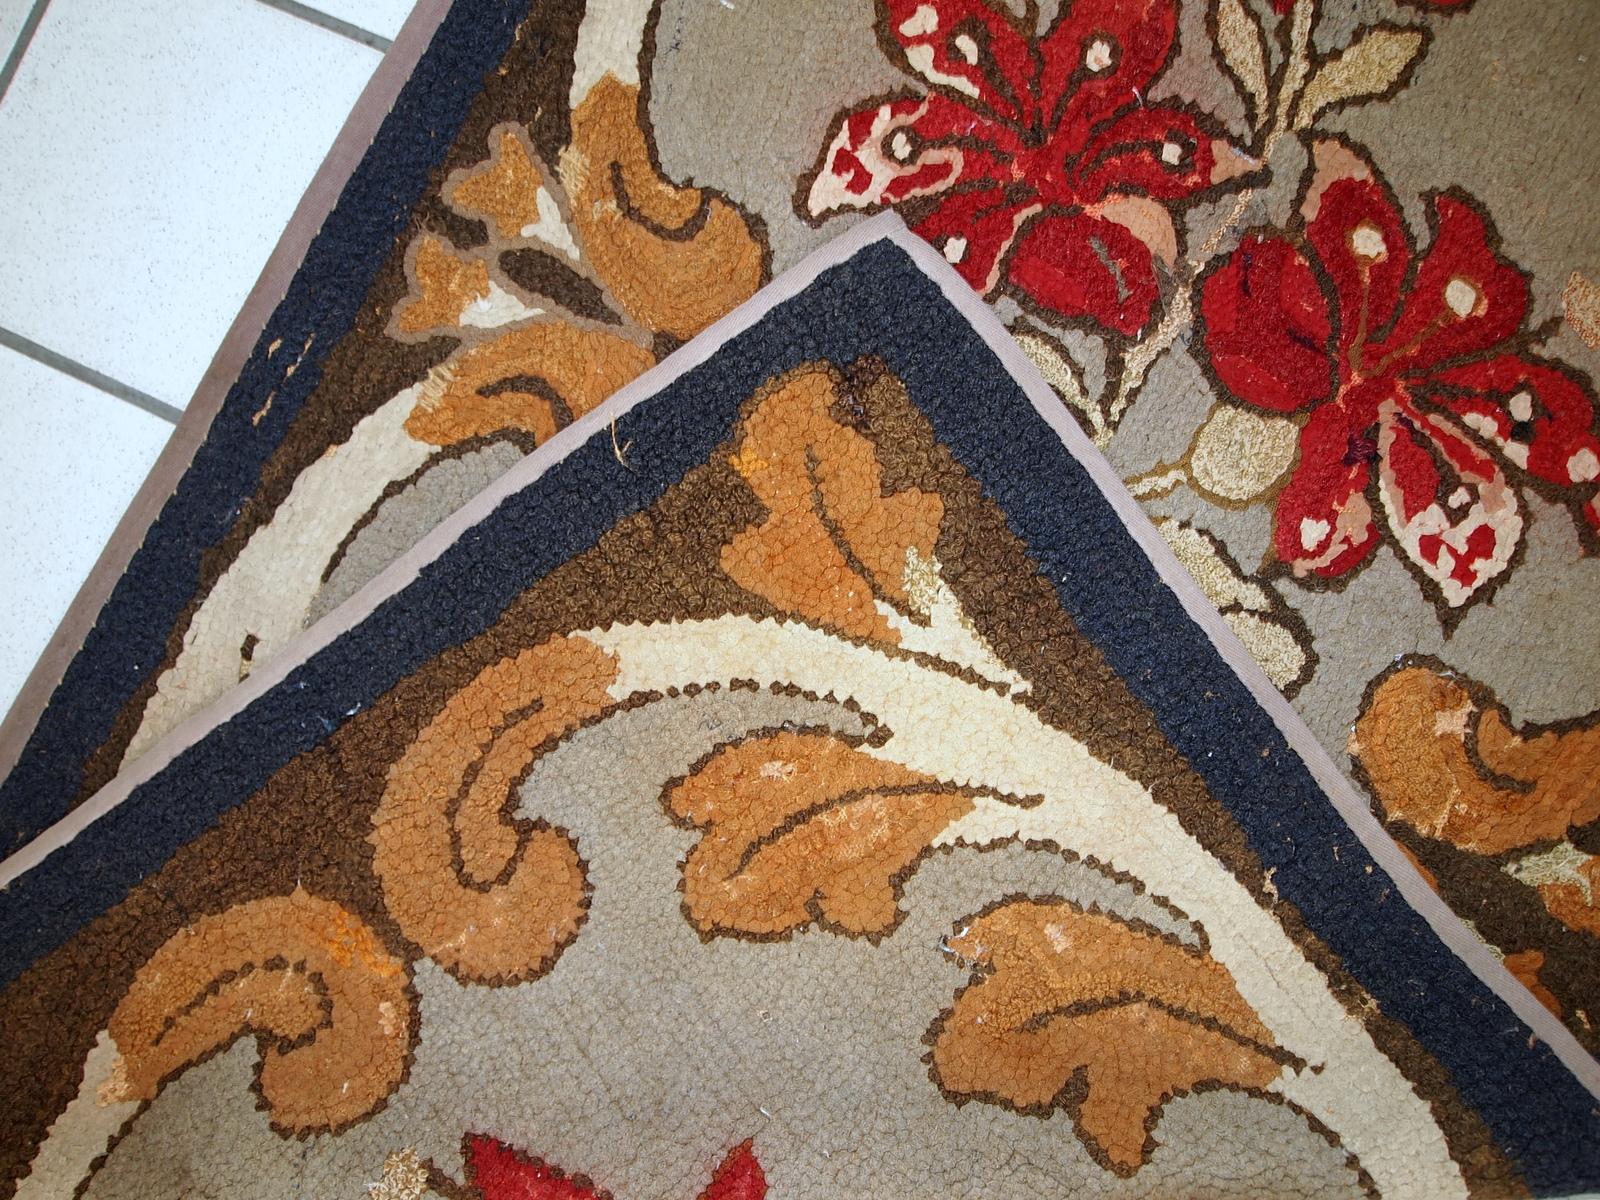 Handgefertigter antiker amerikanischer Hakenteppich mit floralem Muster. Der Teppich wurde zu Beginn des 20. Jahrhunderts in den USA hergestellt. Es ist im Originalzustand, hat einige Altersspuren.

- Zustand: original, einige Altersspuren,

-